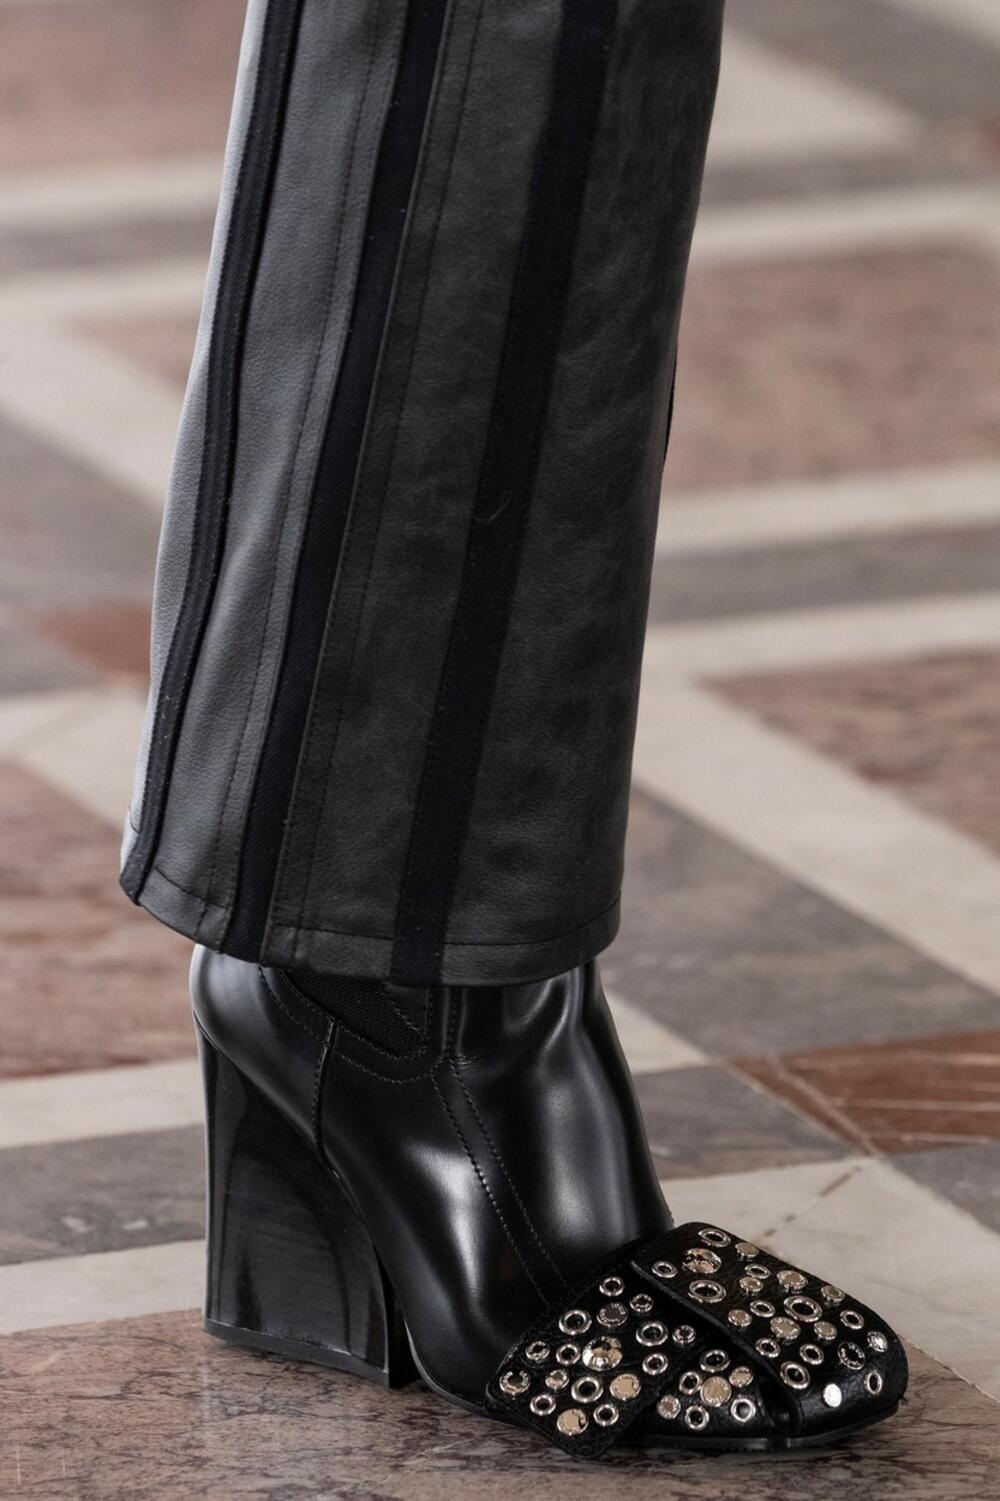 <p>Jedan model prošetao je nekoliko najnovijih modela obuće sa Luj Viton potpisom tokom Nedelje modu u Parizu. U pitanju je kolekcija jesen/zima za 2021/2022. godinu. Pomalo bizarno ili supertrendi? Procenite sami u galeriji:</p>